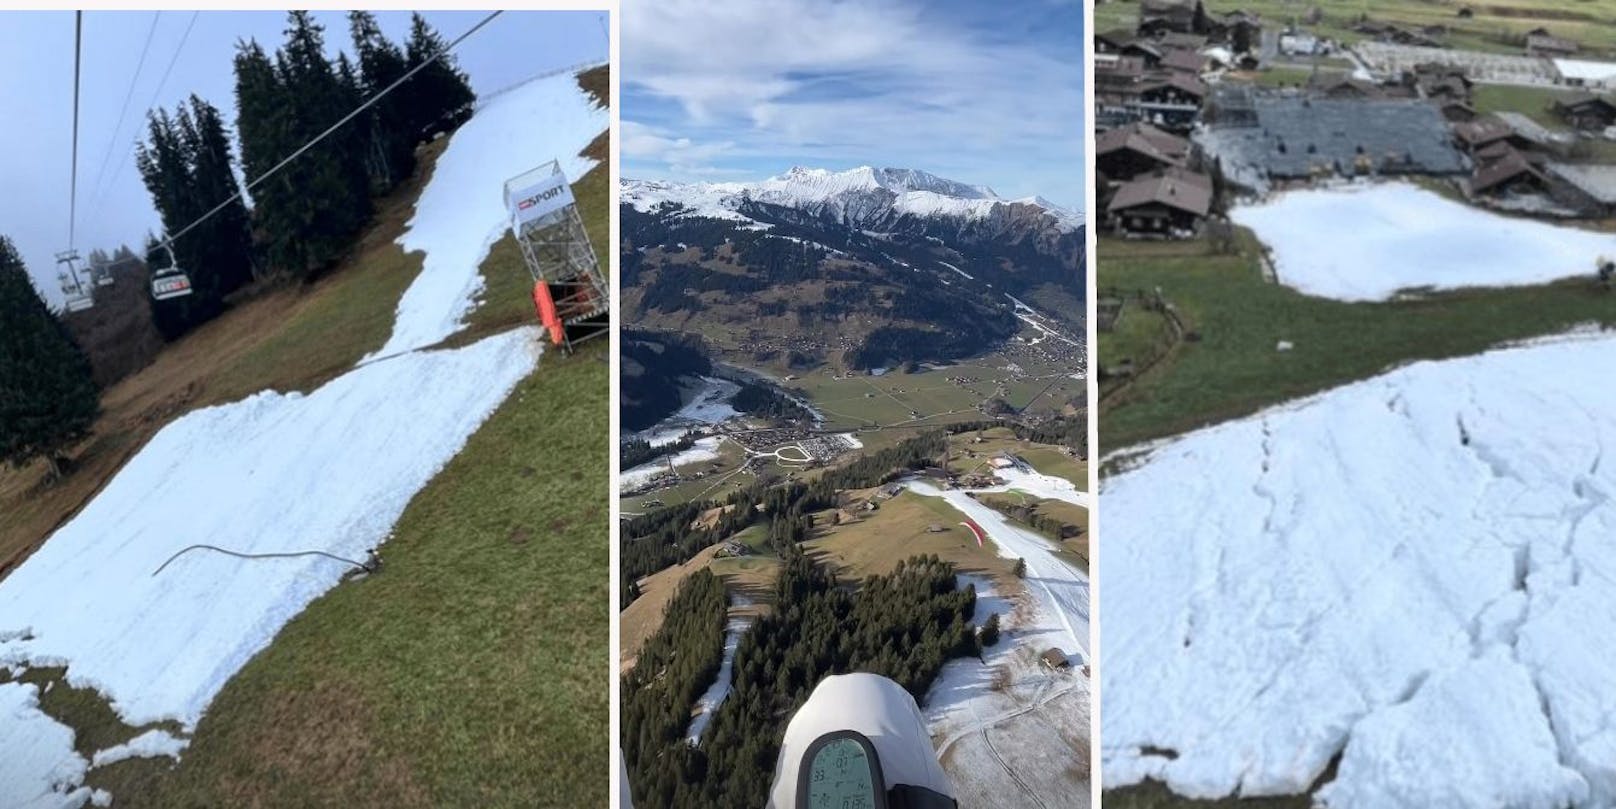 Ex-Ski-Star Tina Weirather beim Paragleiten in der Luft und vom Lift aus: Schneemangel in Adelboden.